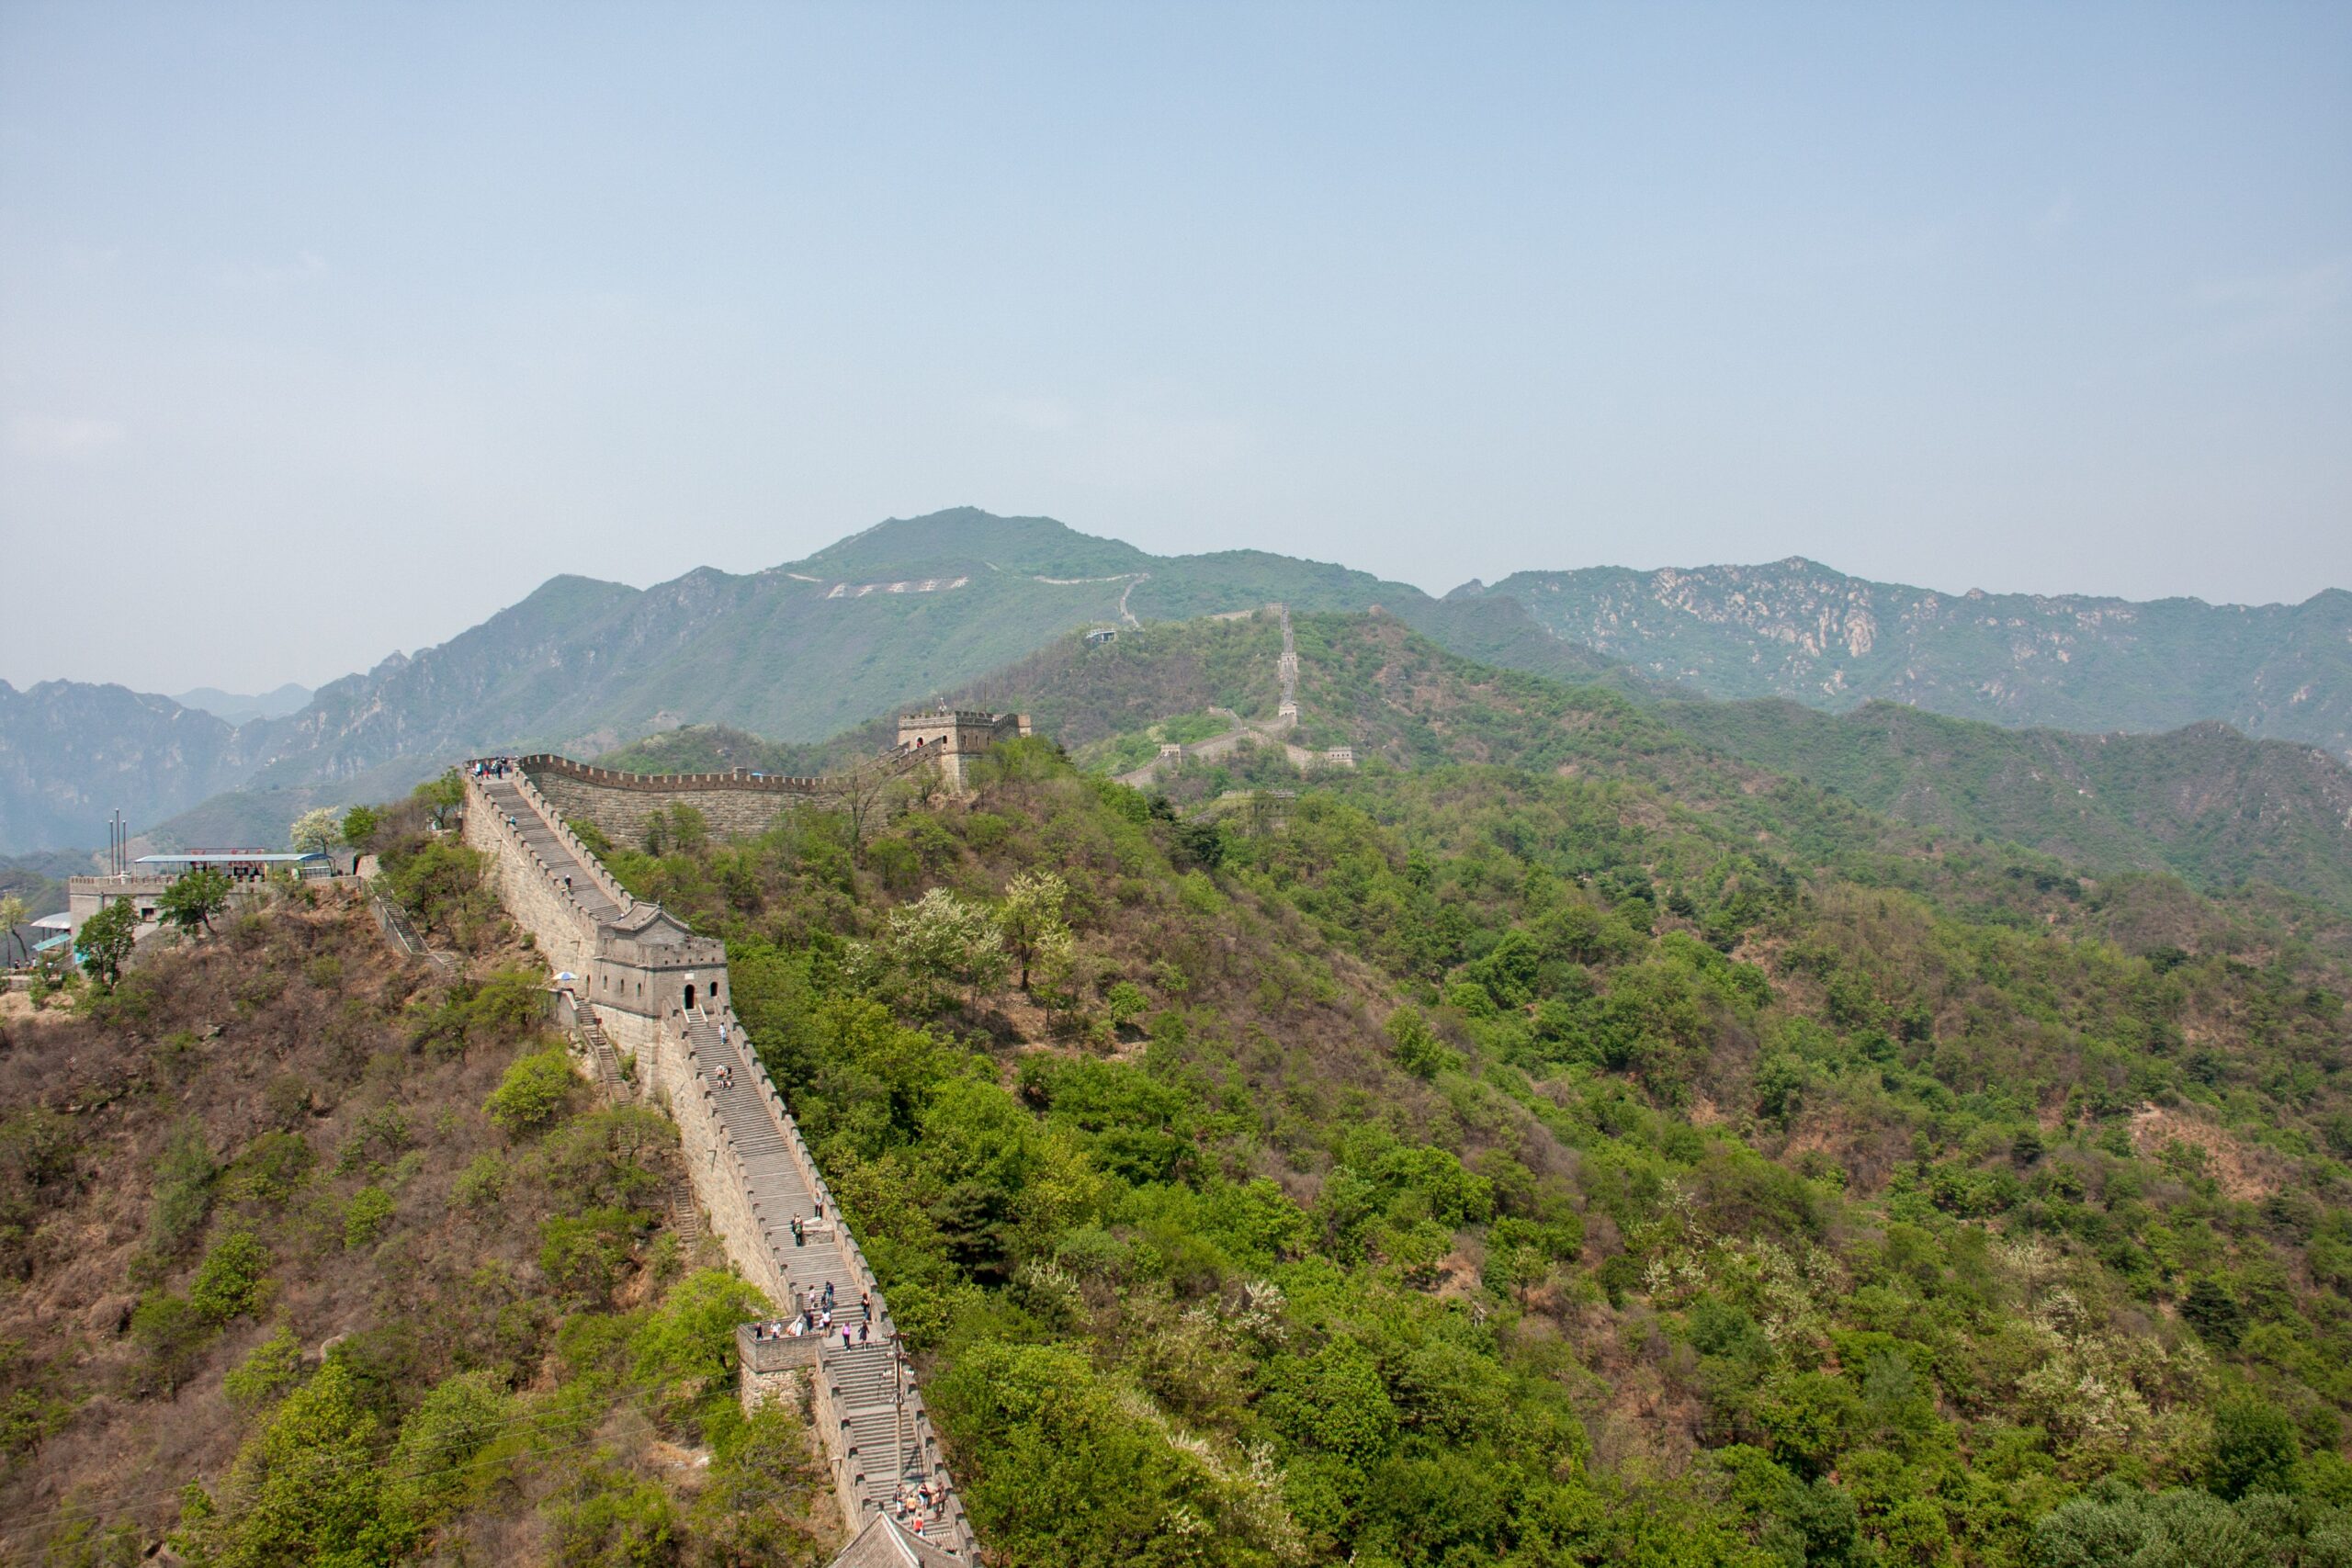 The Great Wall Of China – Mutianyu